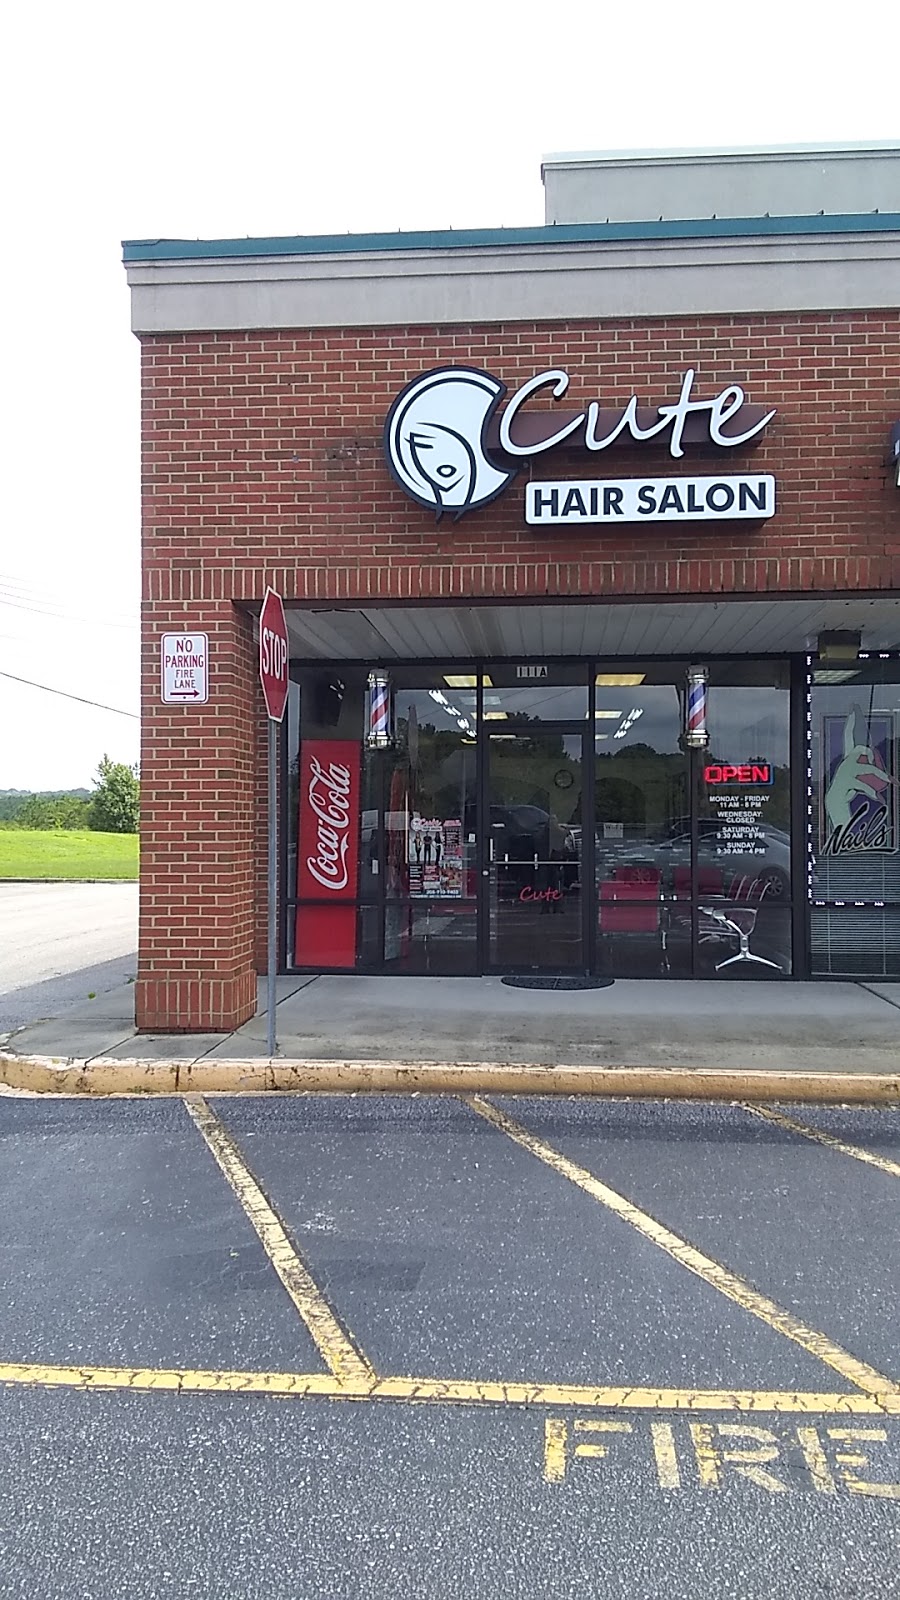 Cute Hair Salon | 1725 Decatur Hwy #111a, Fultondale, AL 35068, USA | Phone: (205) 910-9403